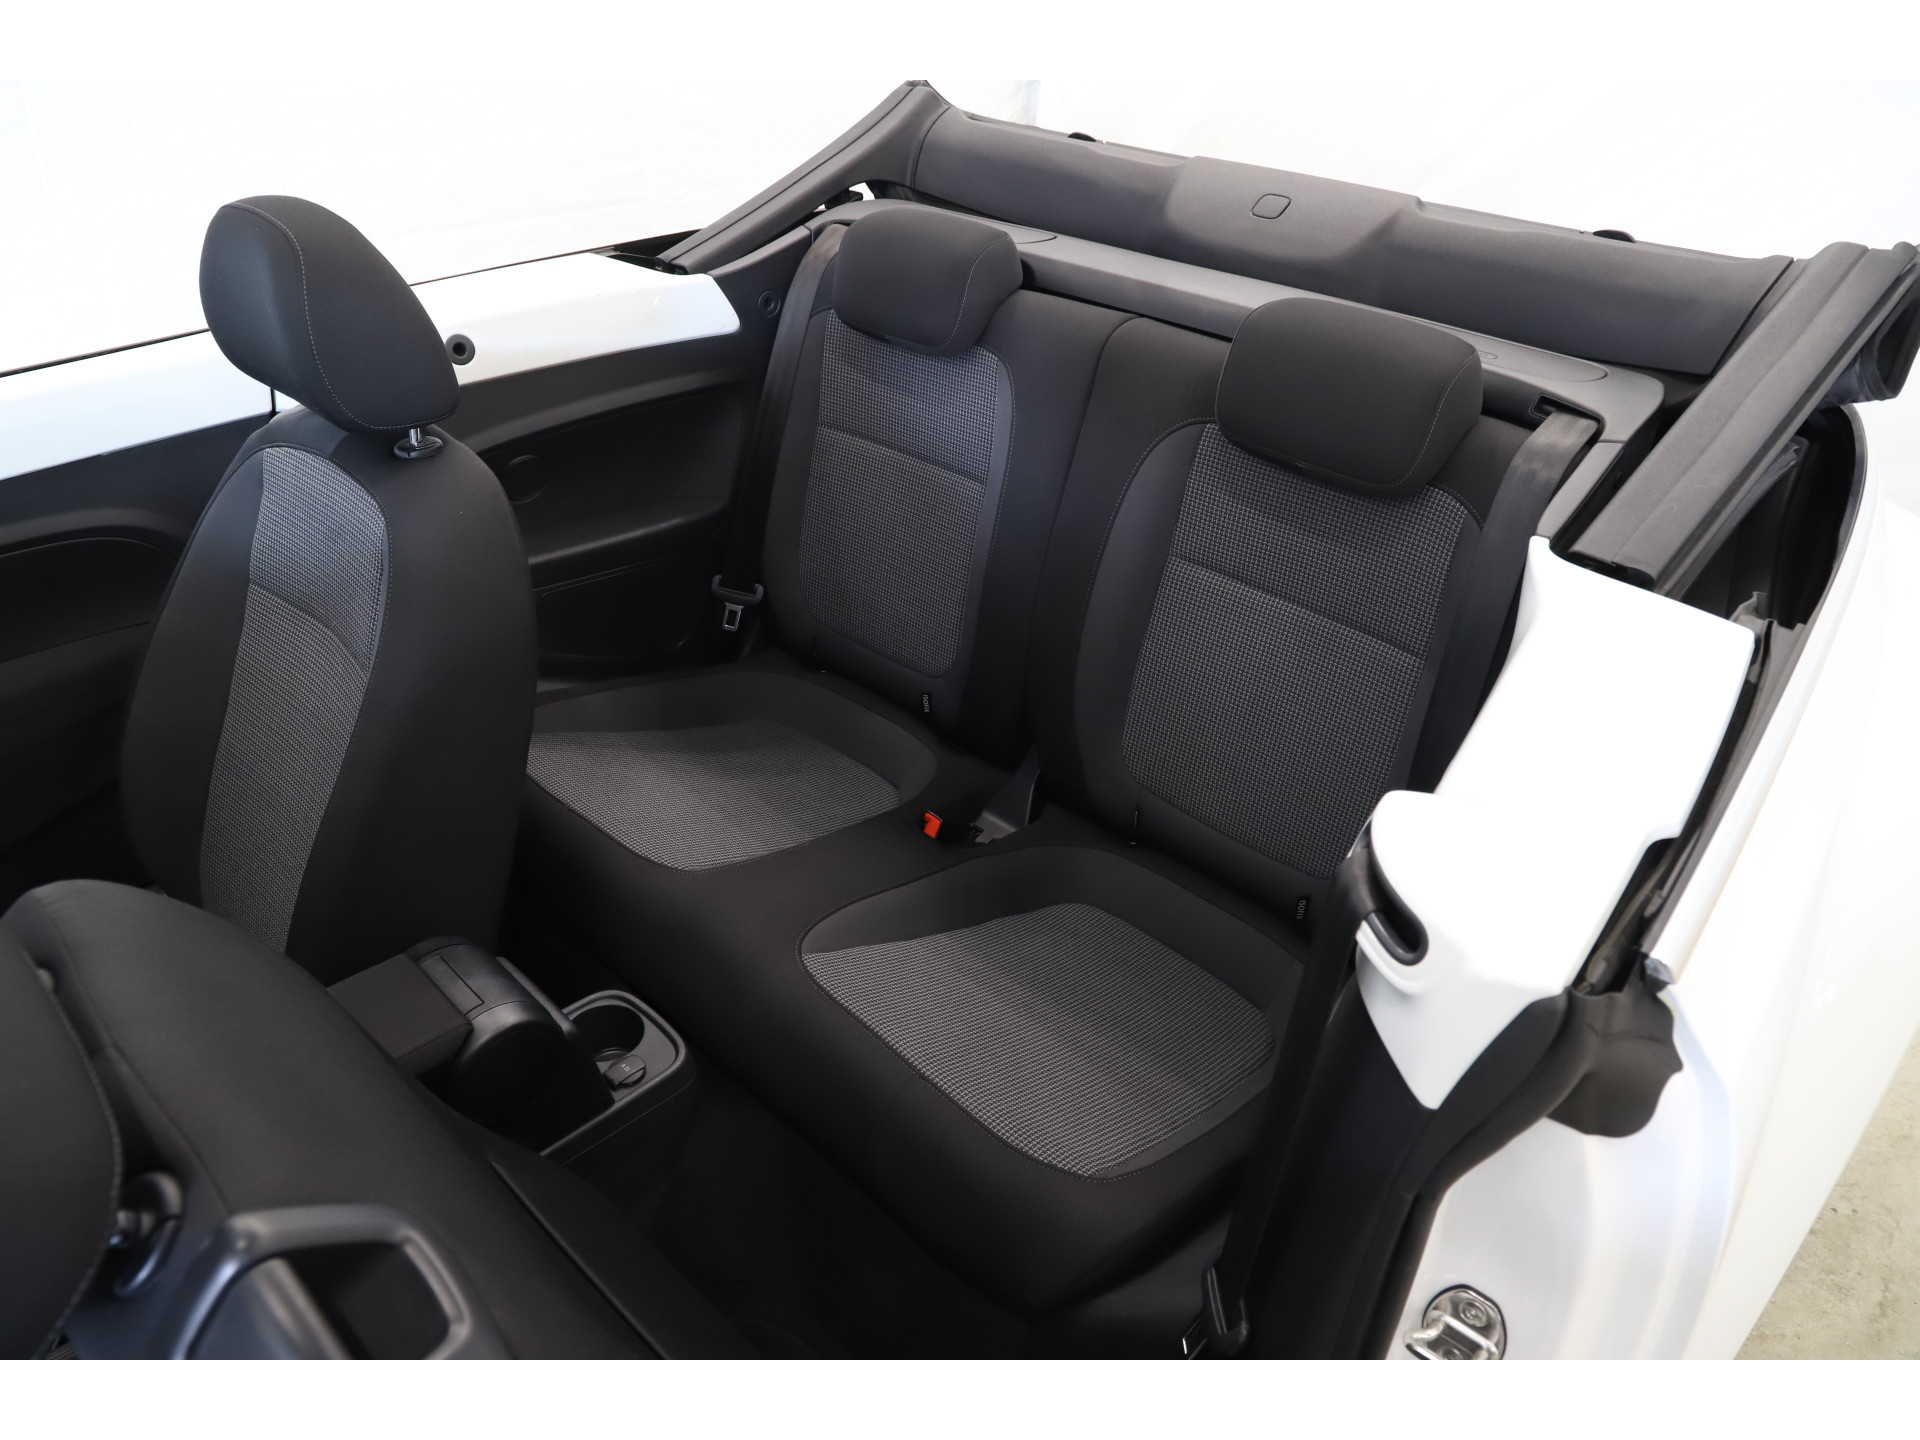 Volkswagen - Beetle Cabriolet 1.2 TSI 105pk Design - 2015